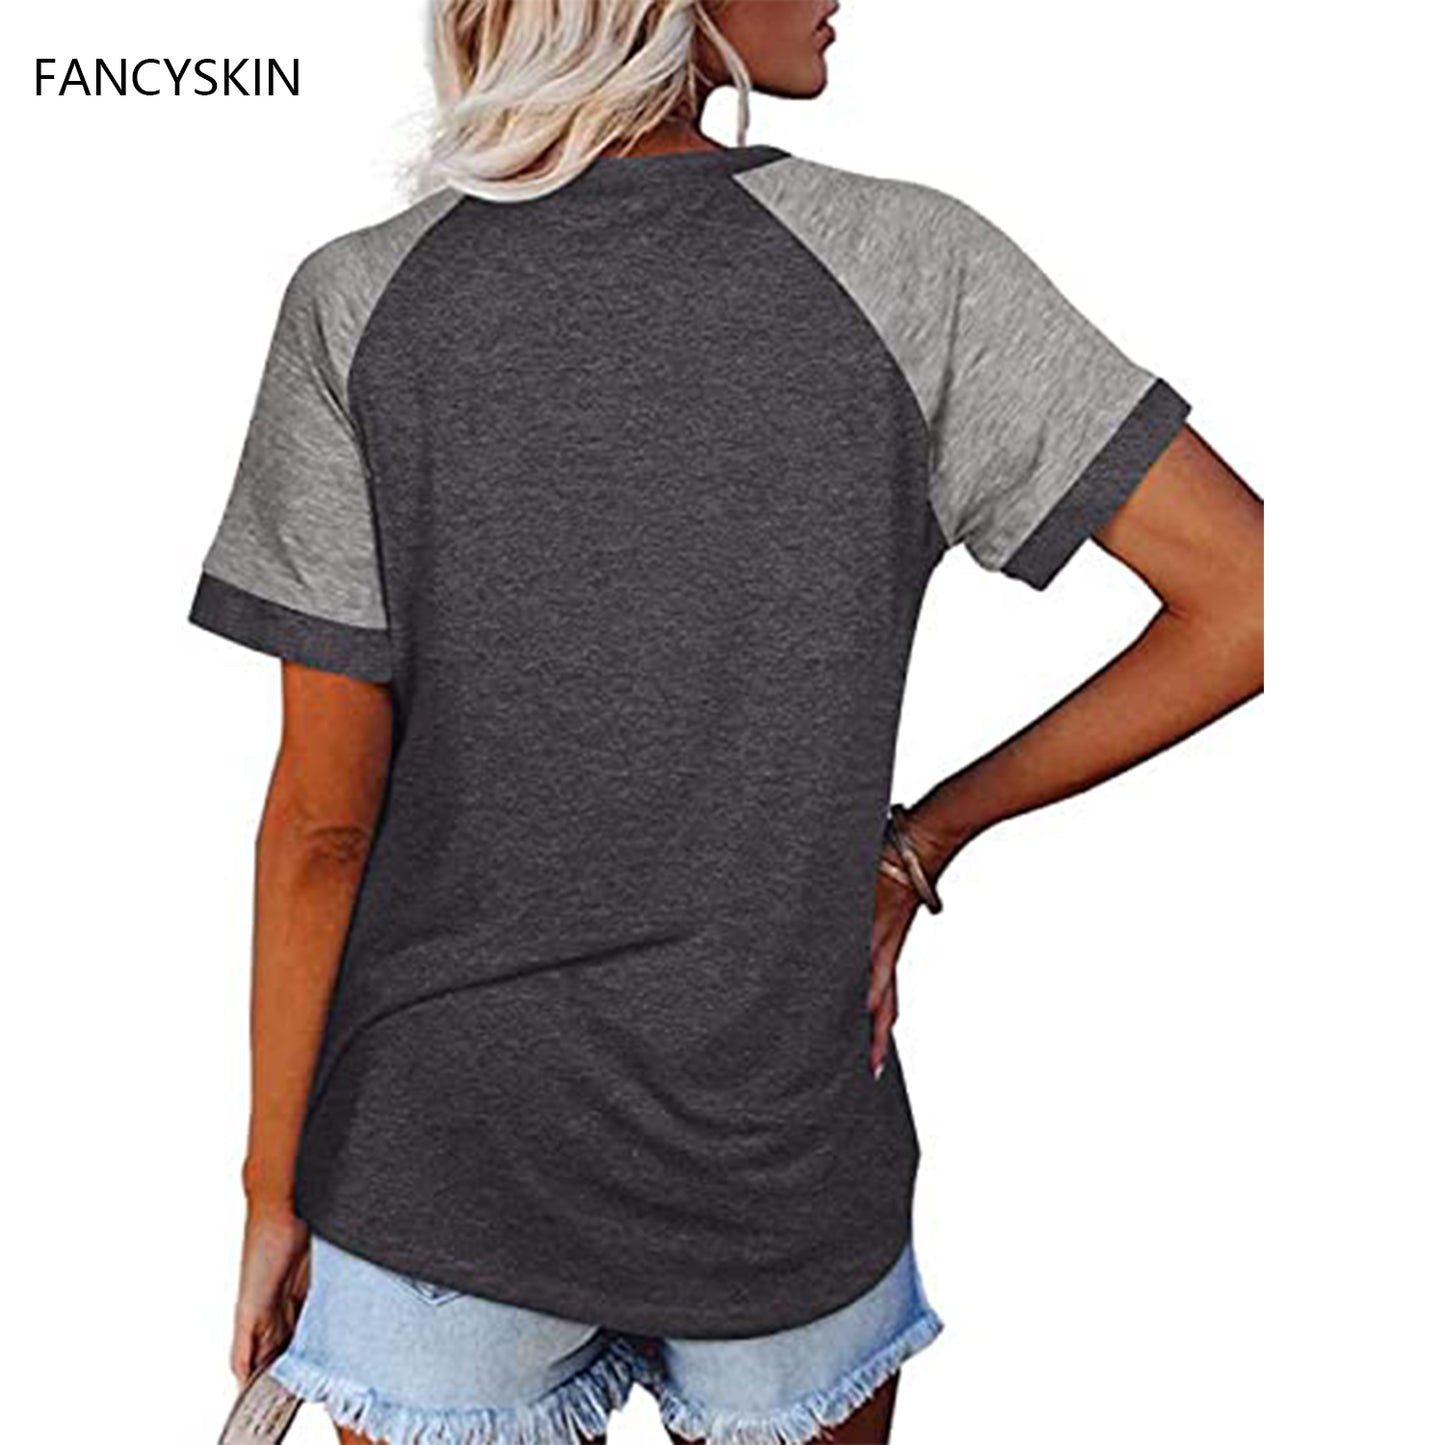 FANCYSKIN Women's Short Raglan Sleeve T-Shirts